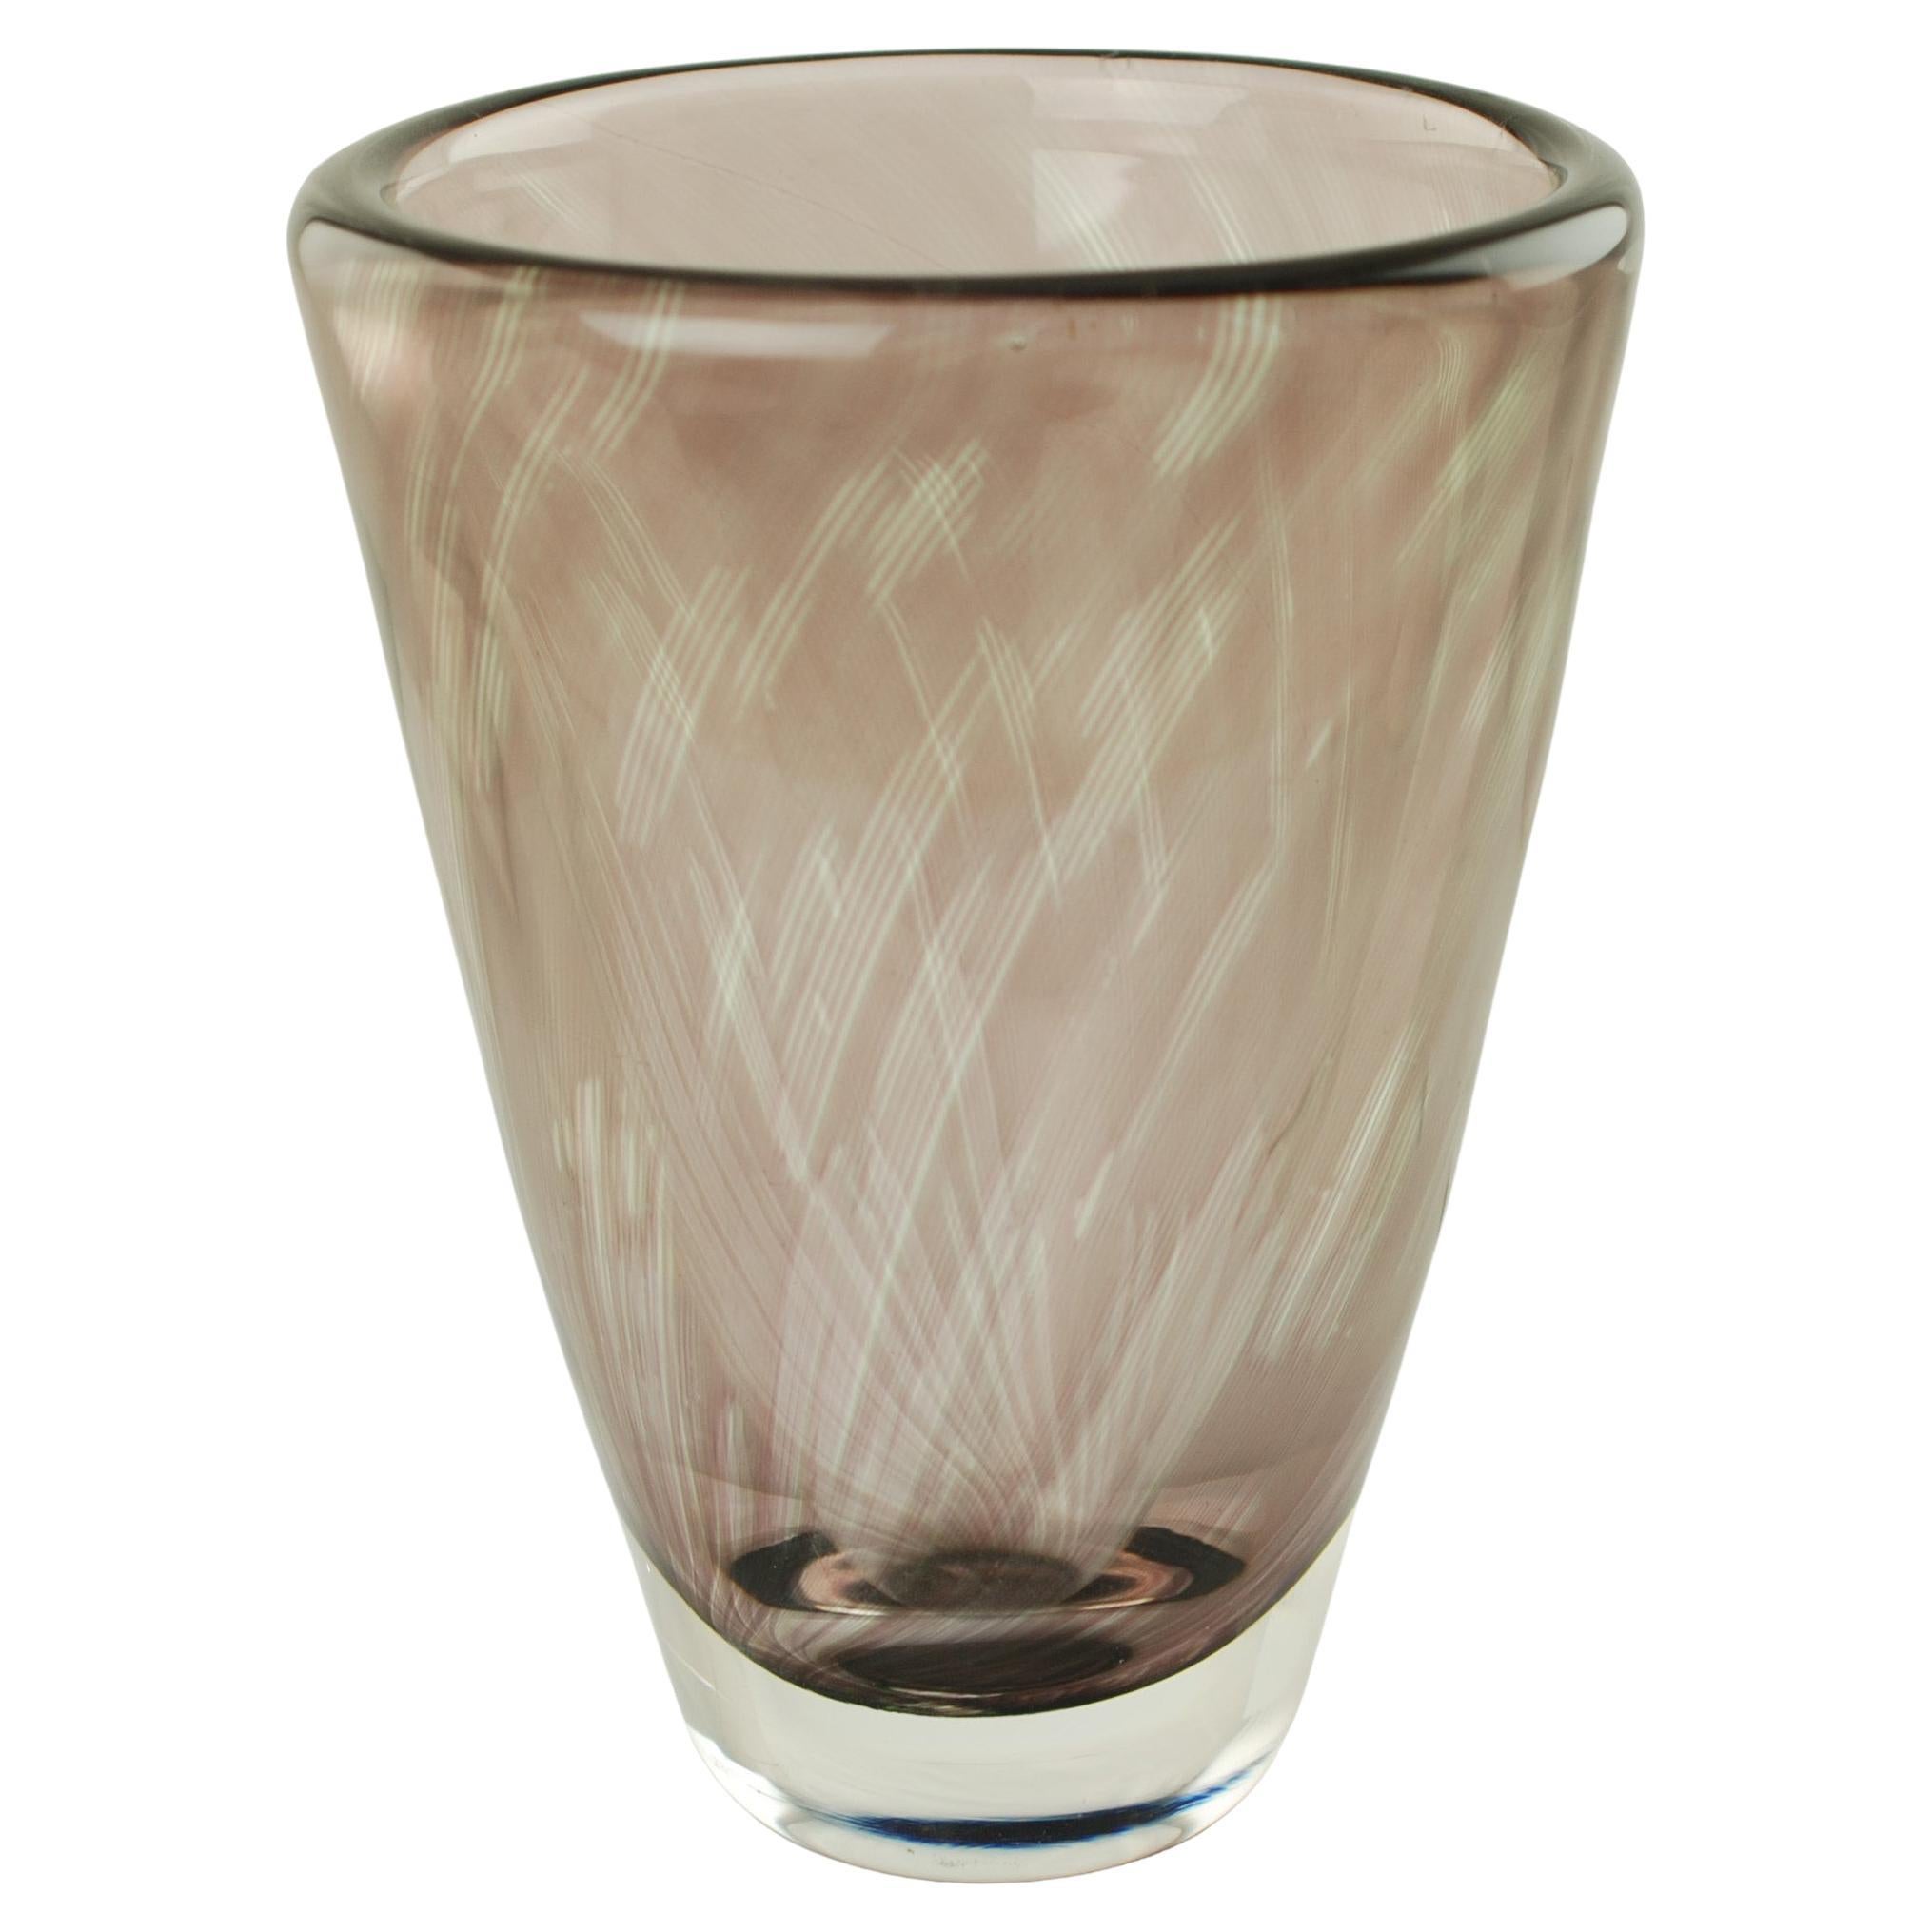 Midcentury Edvin Öhrström for Orrefors Sweden Graal Glass Vase